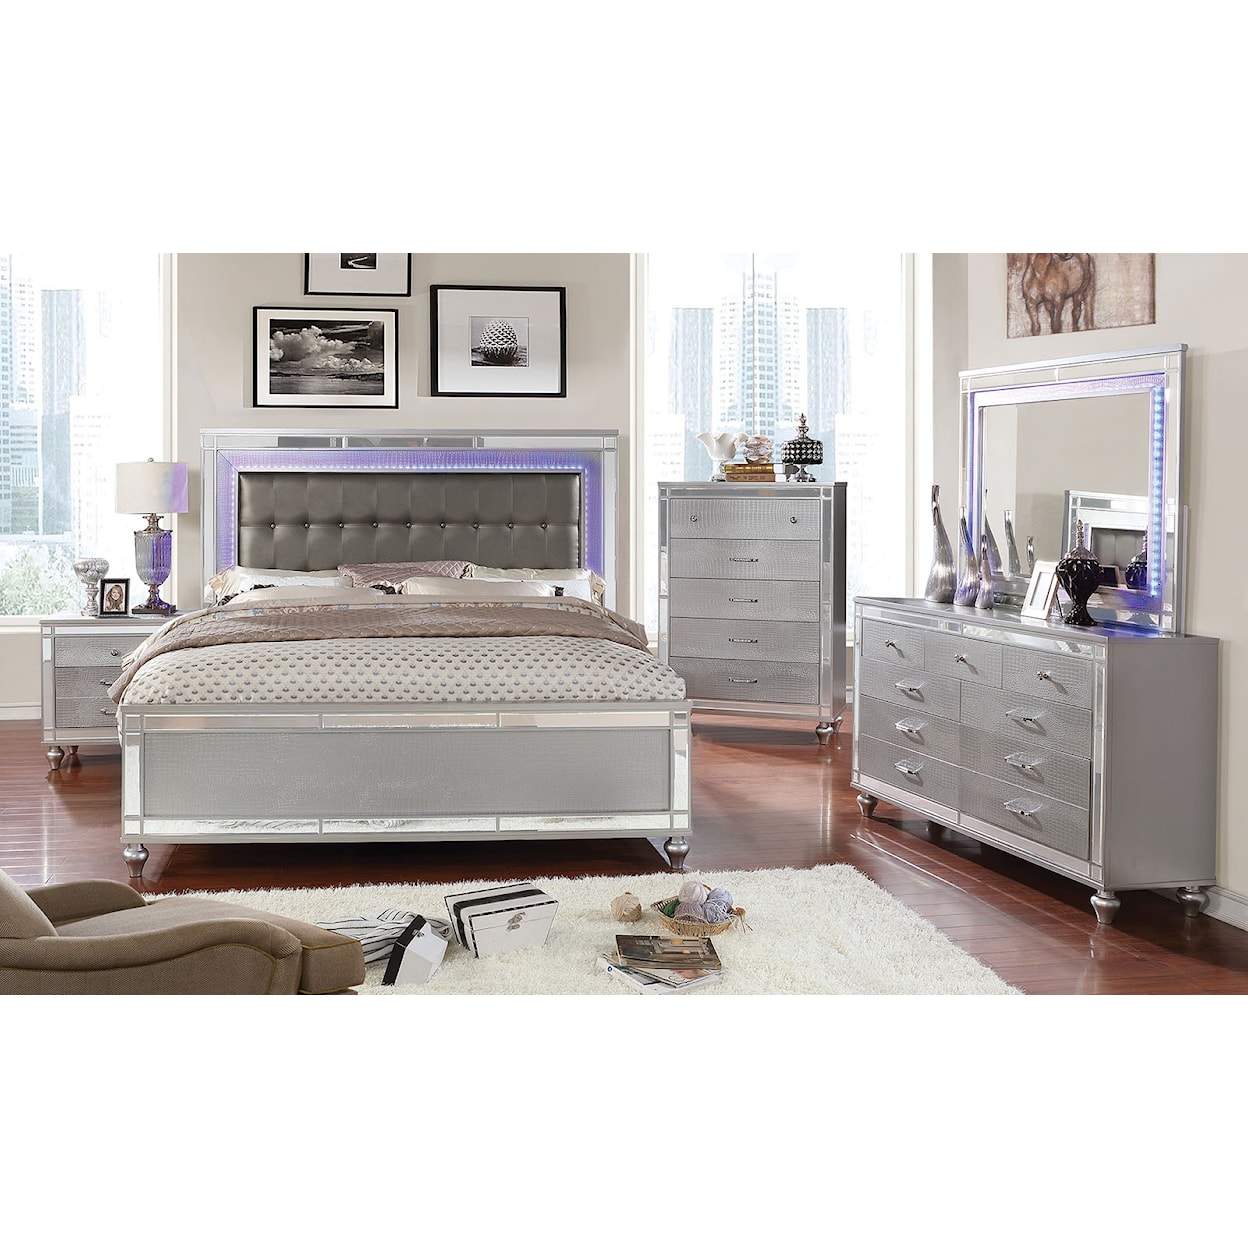 Furniture of America Brachium 4-Piece Queen Bedroom Set